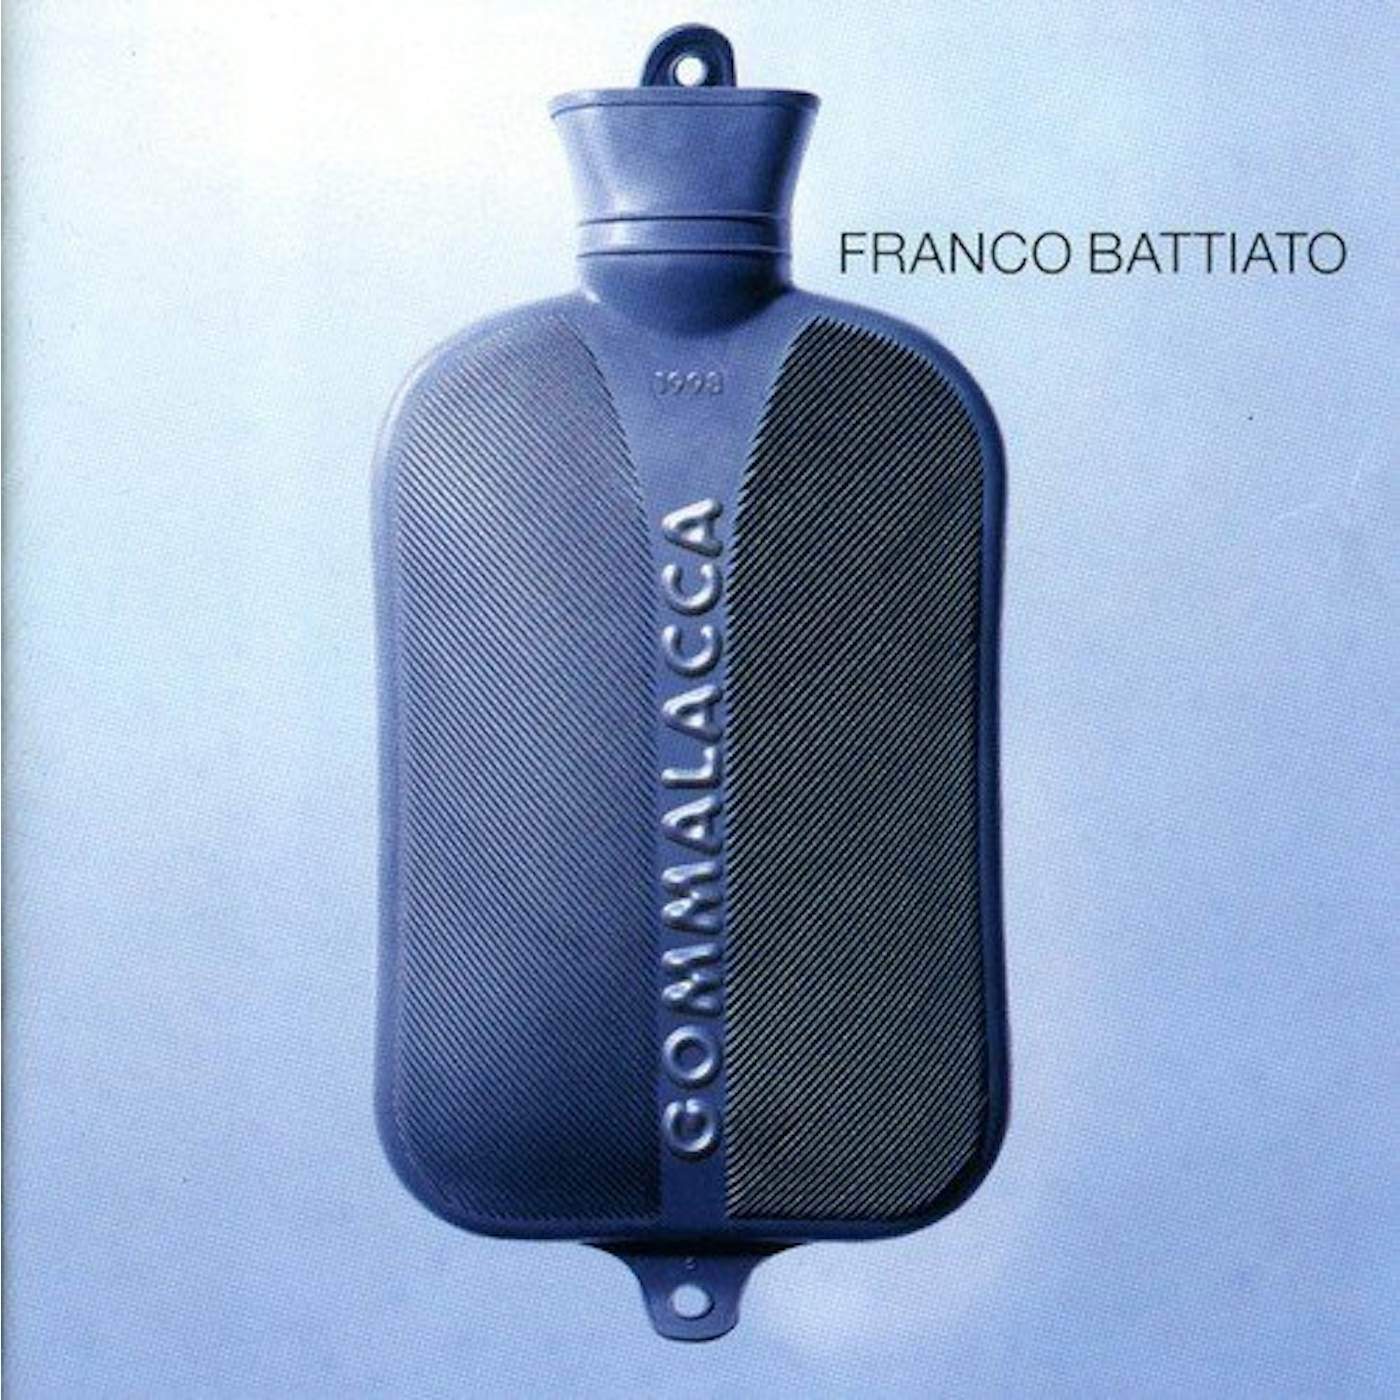 Franco Battiato Gommalacca Vinyl Record